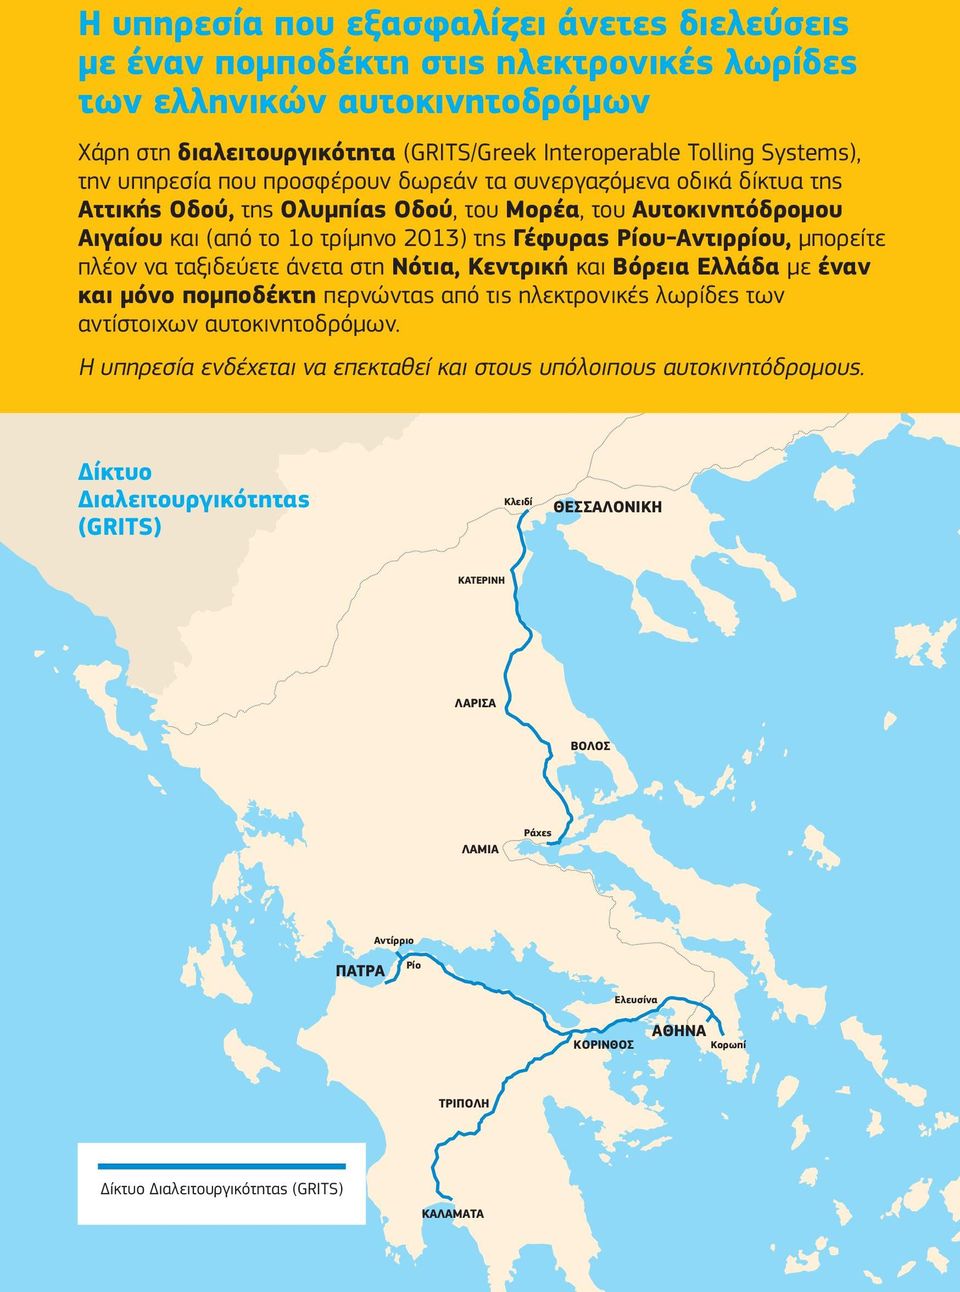 μπορείτε πλέον να ταξιδεύετε άνετα στη Νότια, Κεντρική και Βόρεια Ελλάδα με έναν και μόνο πομποδέκτη περνώντας από τις ηλεκτρονικές λωρίδες των αντίστοιχων αυτοκινητοδρόμων.